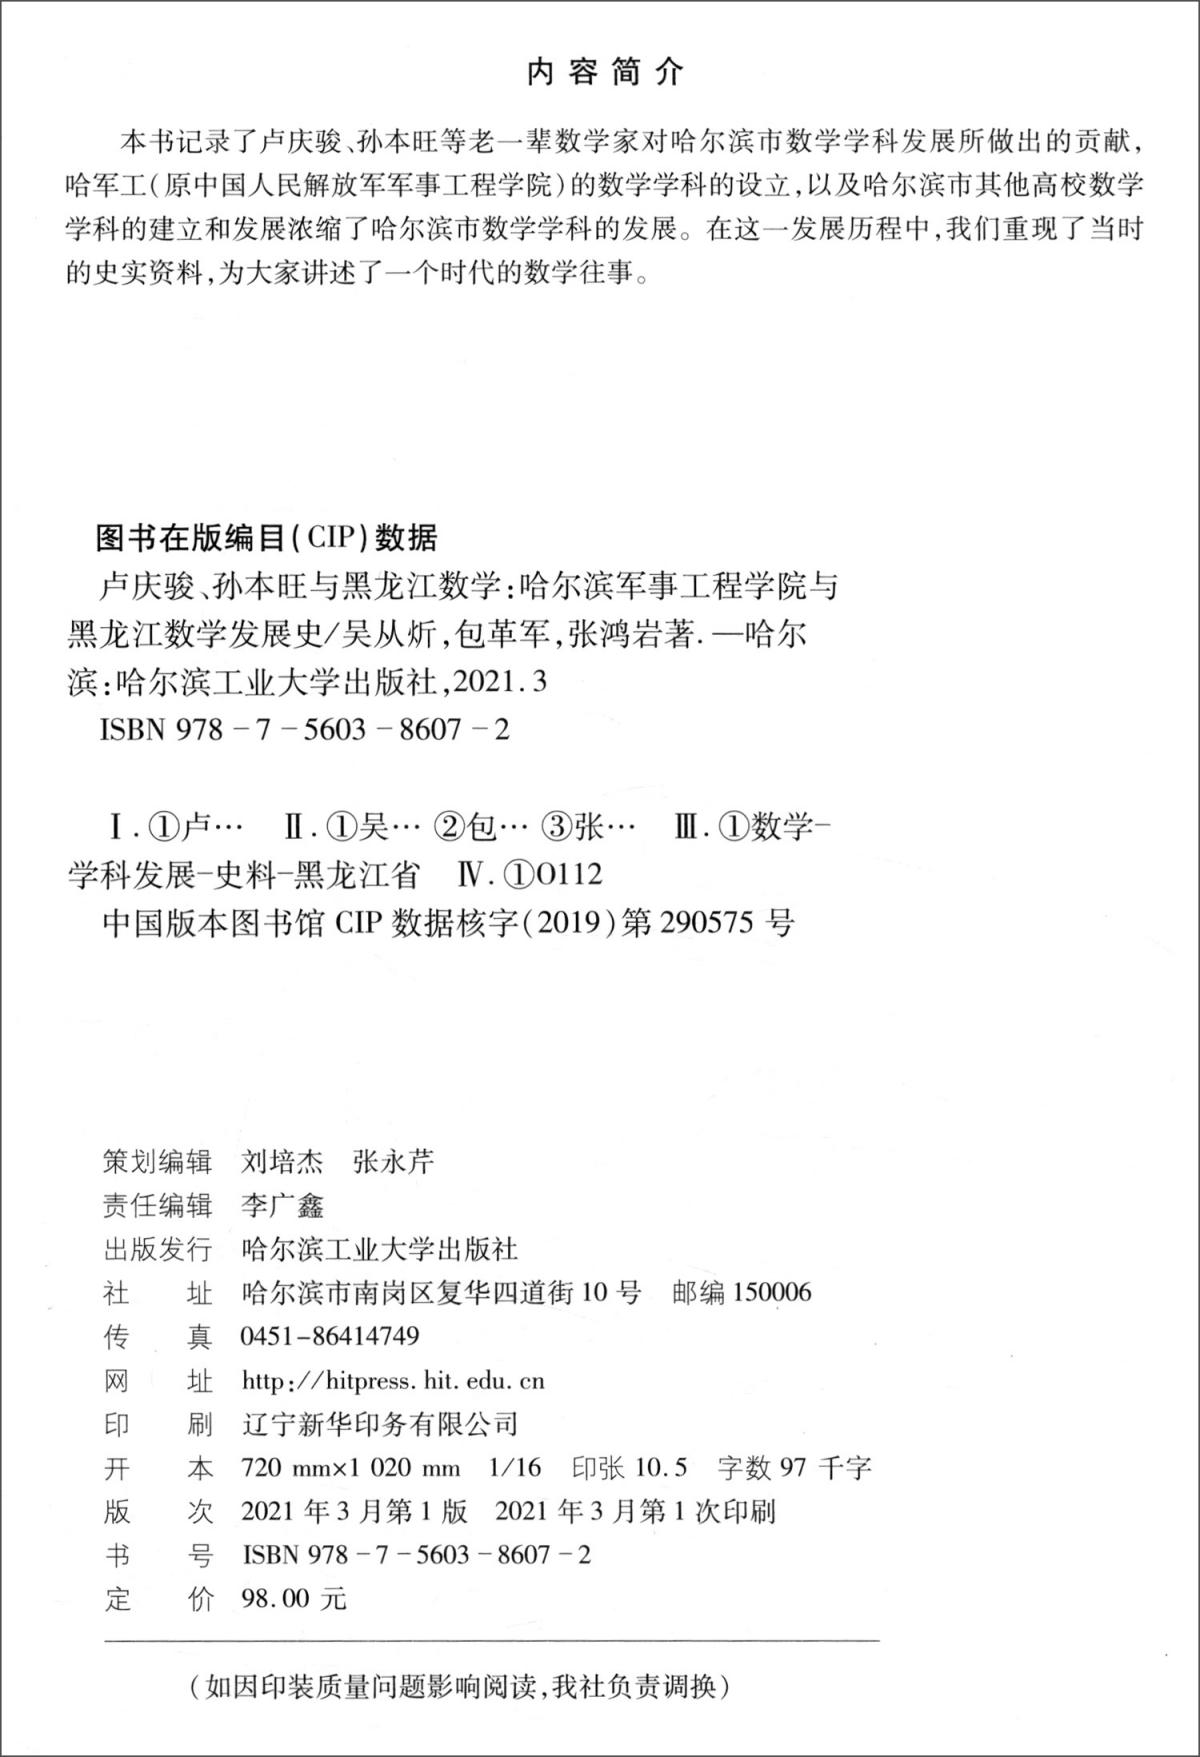 卢庆骏、孙本旺与黑龙江数学：哈尔滨军事工程学院与黑龙江数学发展史（2019年数学史基金）